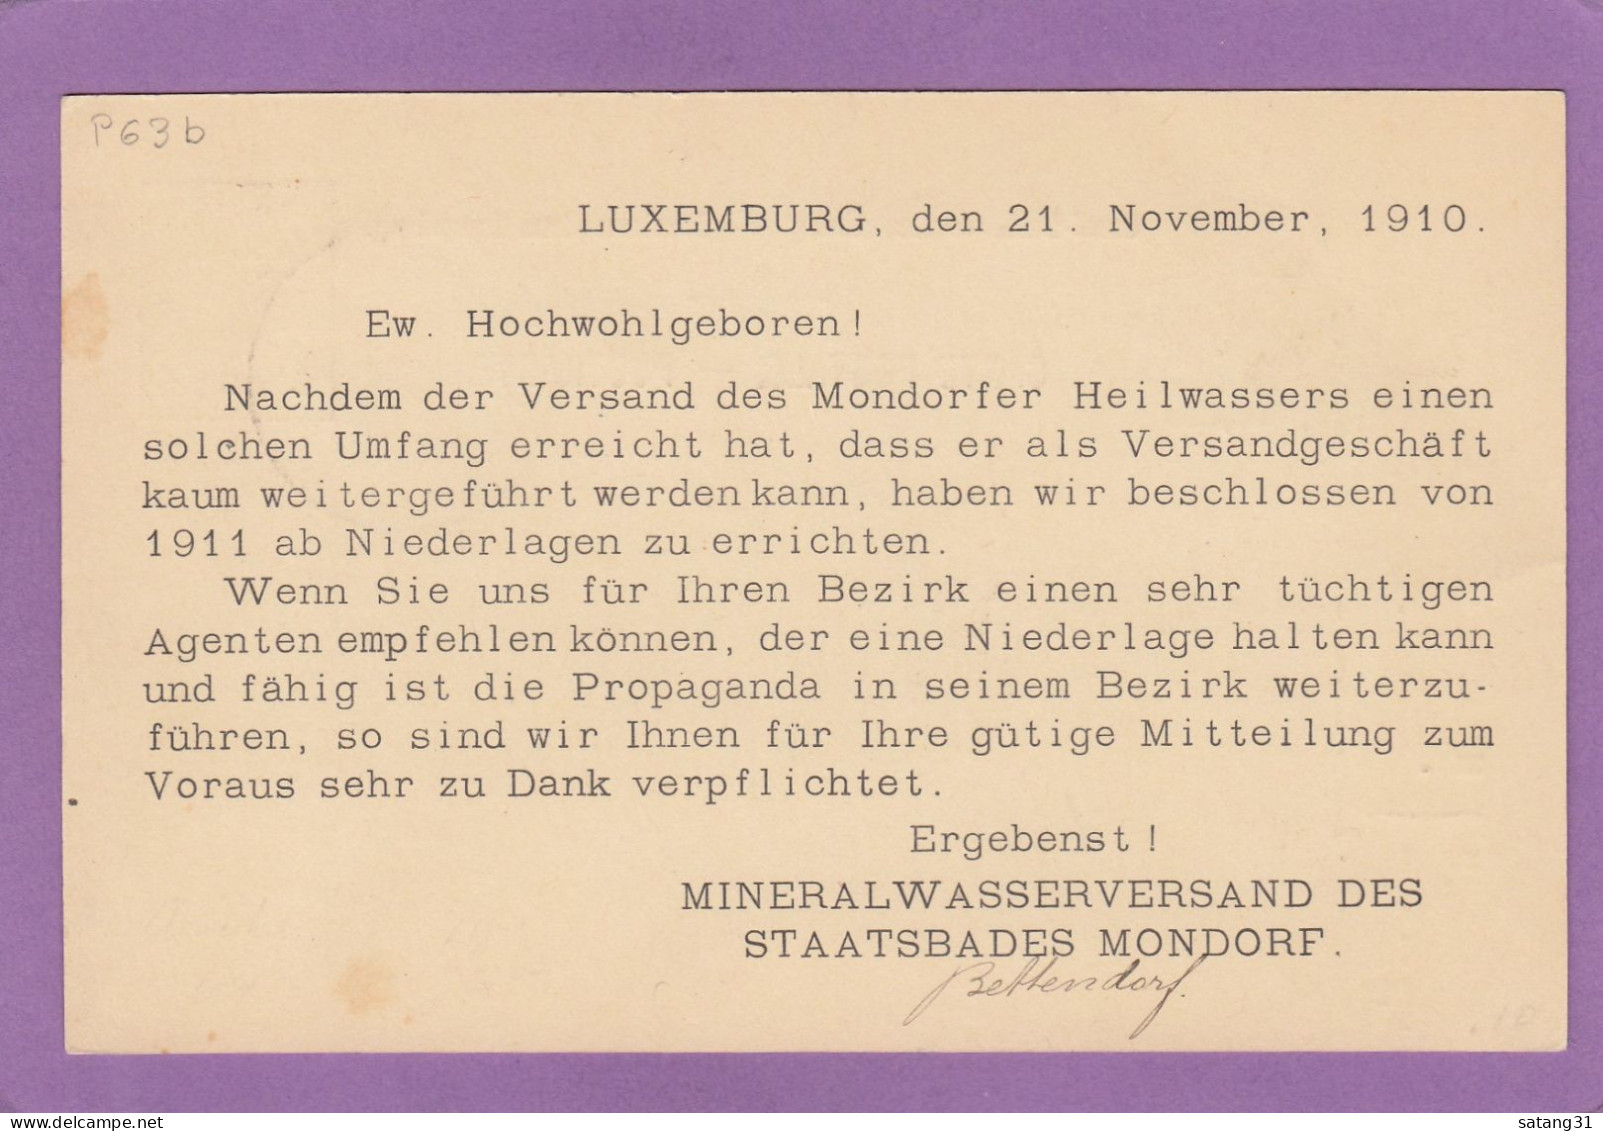 MINERALWASSERVERBAND DES STAATSBADES MONDORF. GANZSACHE NACH TORGAU,DEUTSCHLAND,1910. - Entiers Postaux